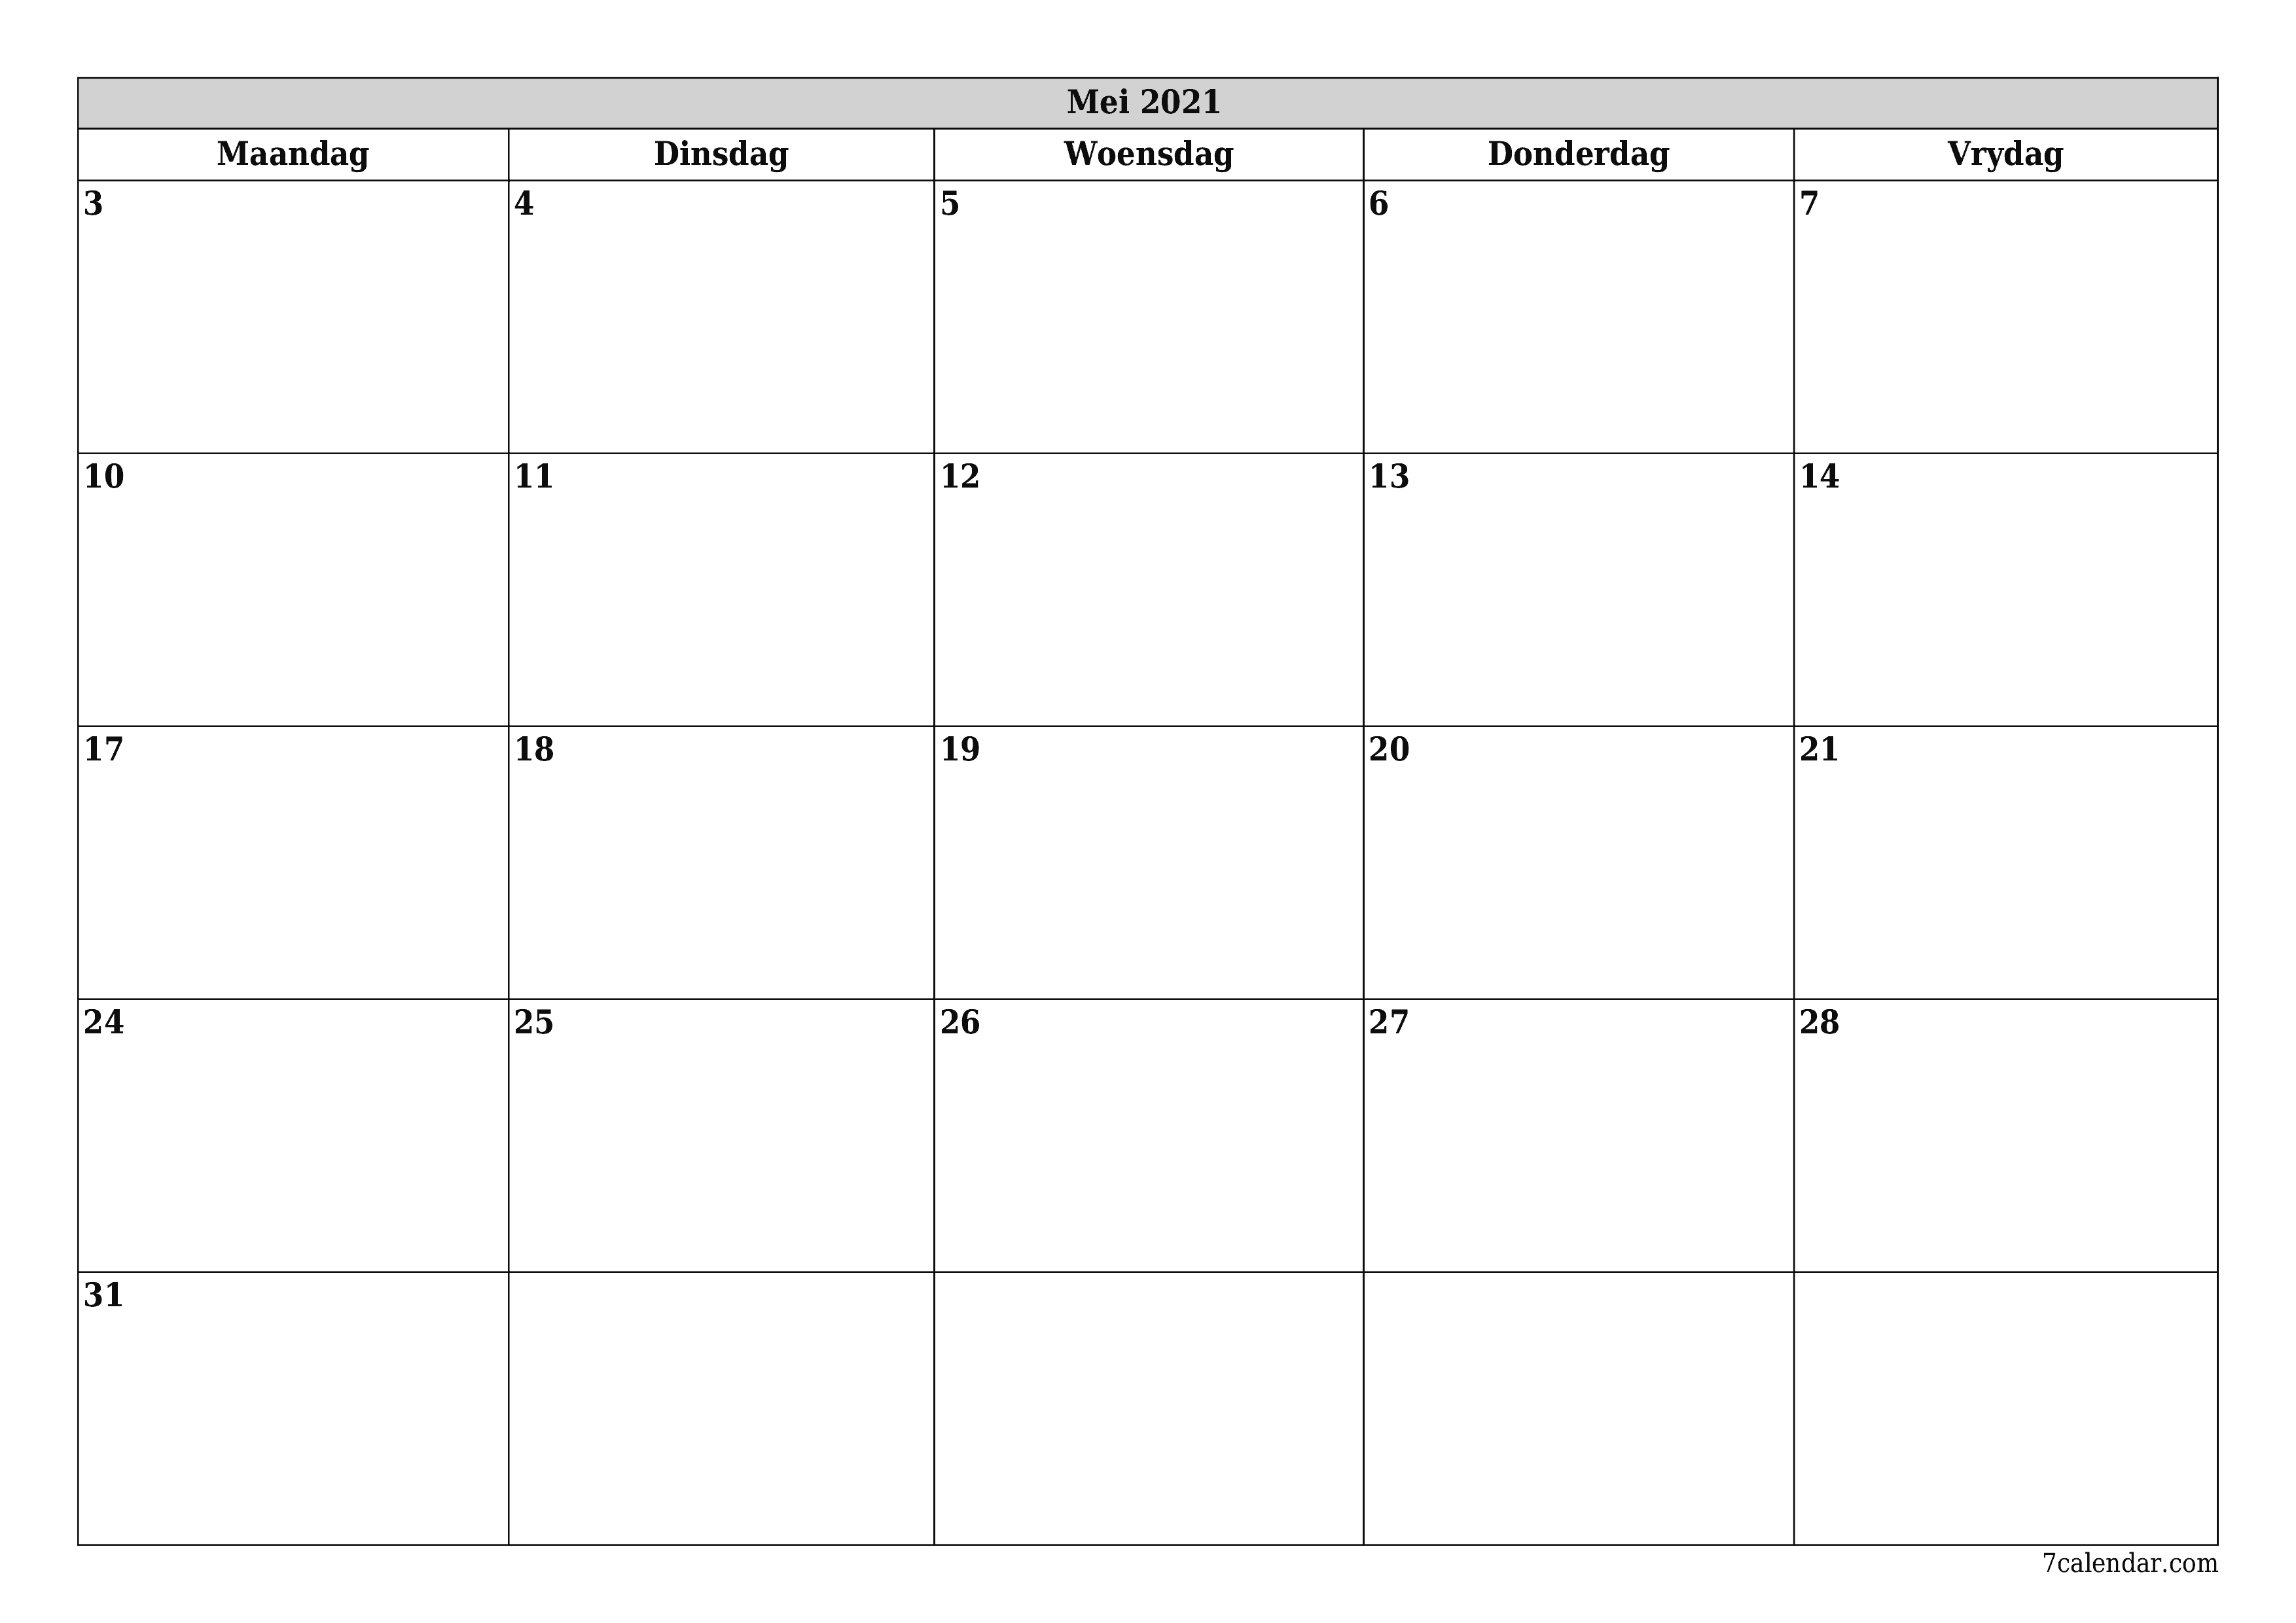 Leë maandelikse drukbare kalender en beplanner vir maand Mei 2021 met notas stoor en druk na PDF PNG Afrikaans